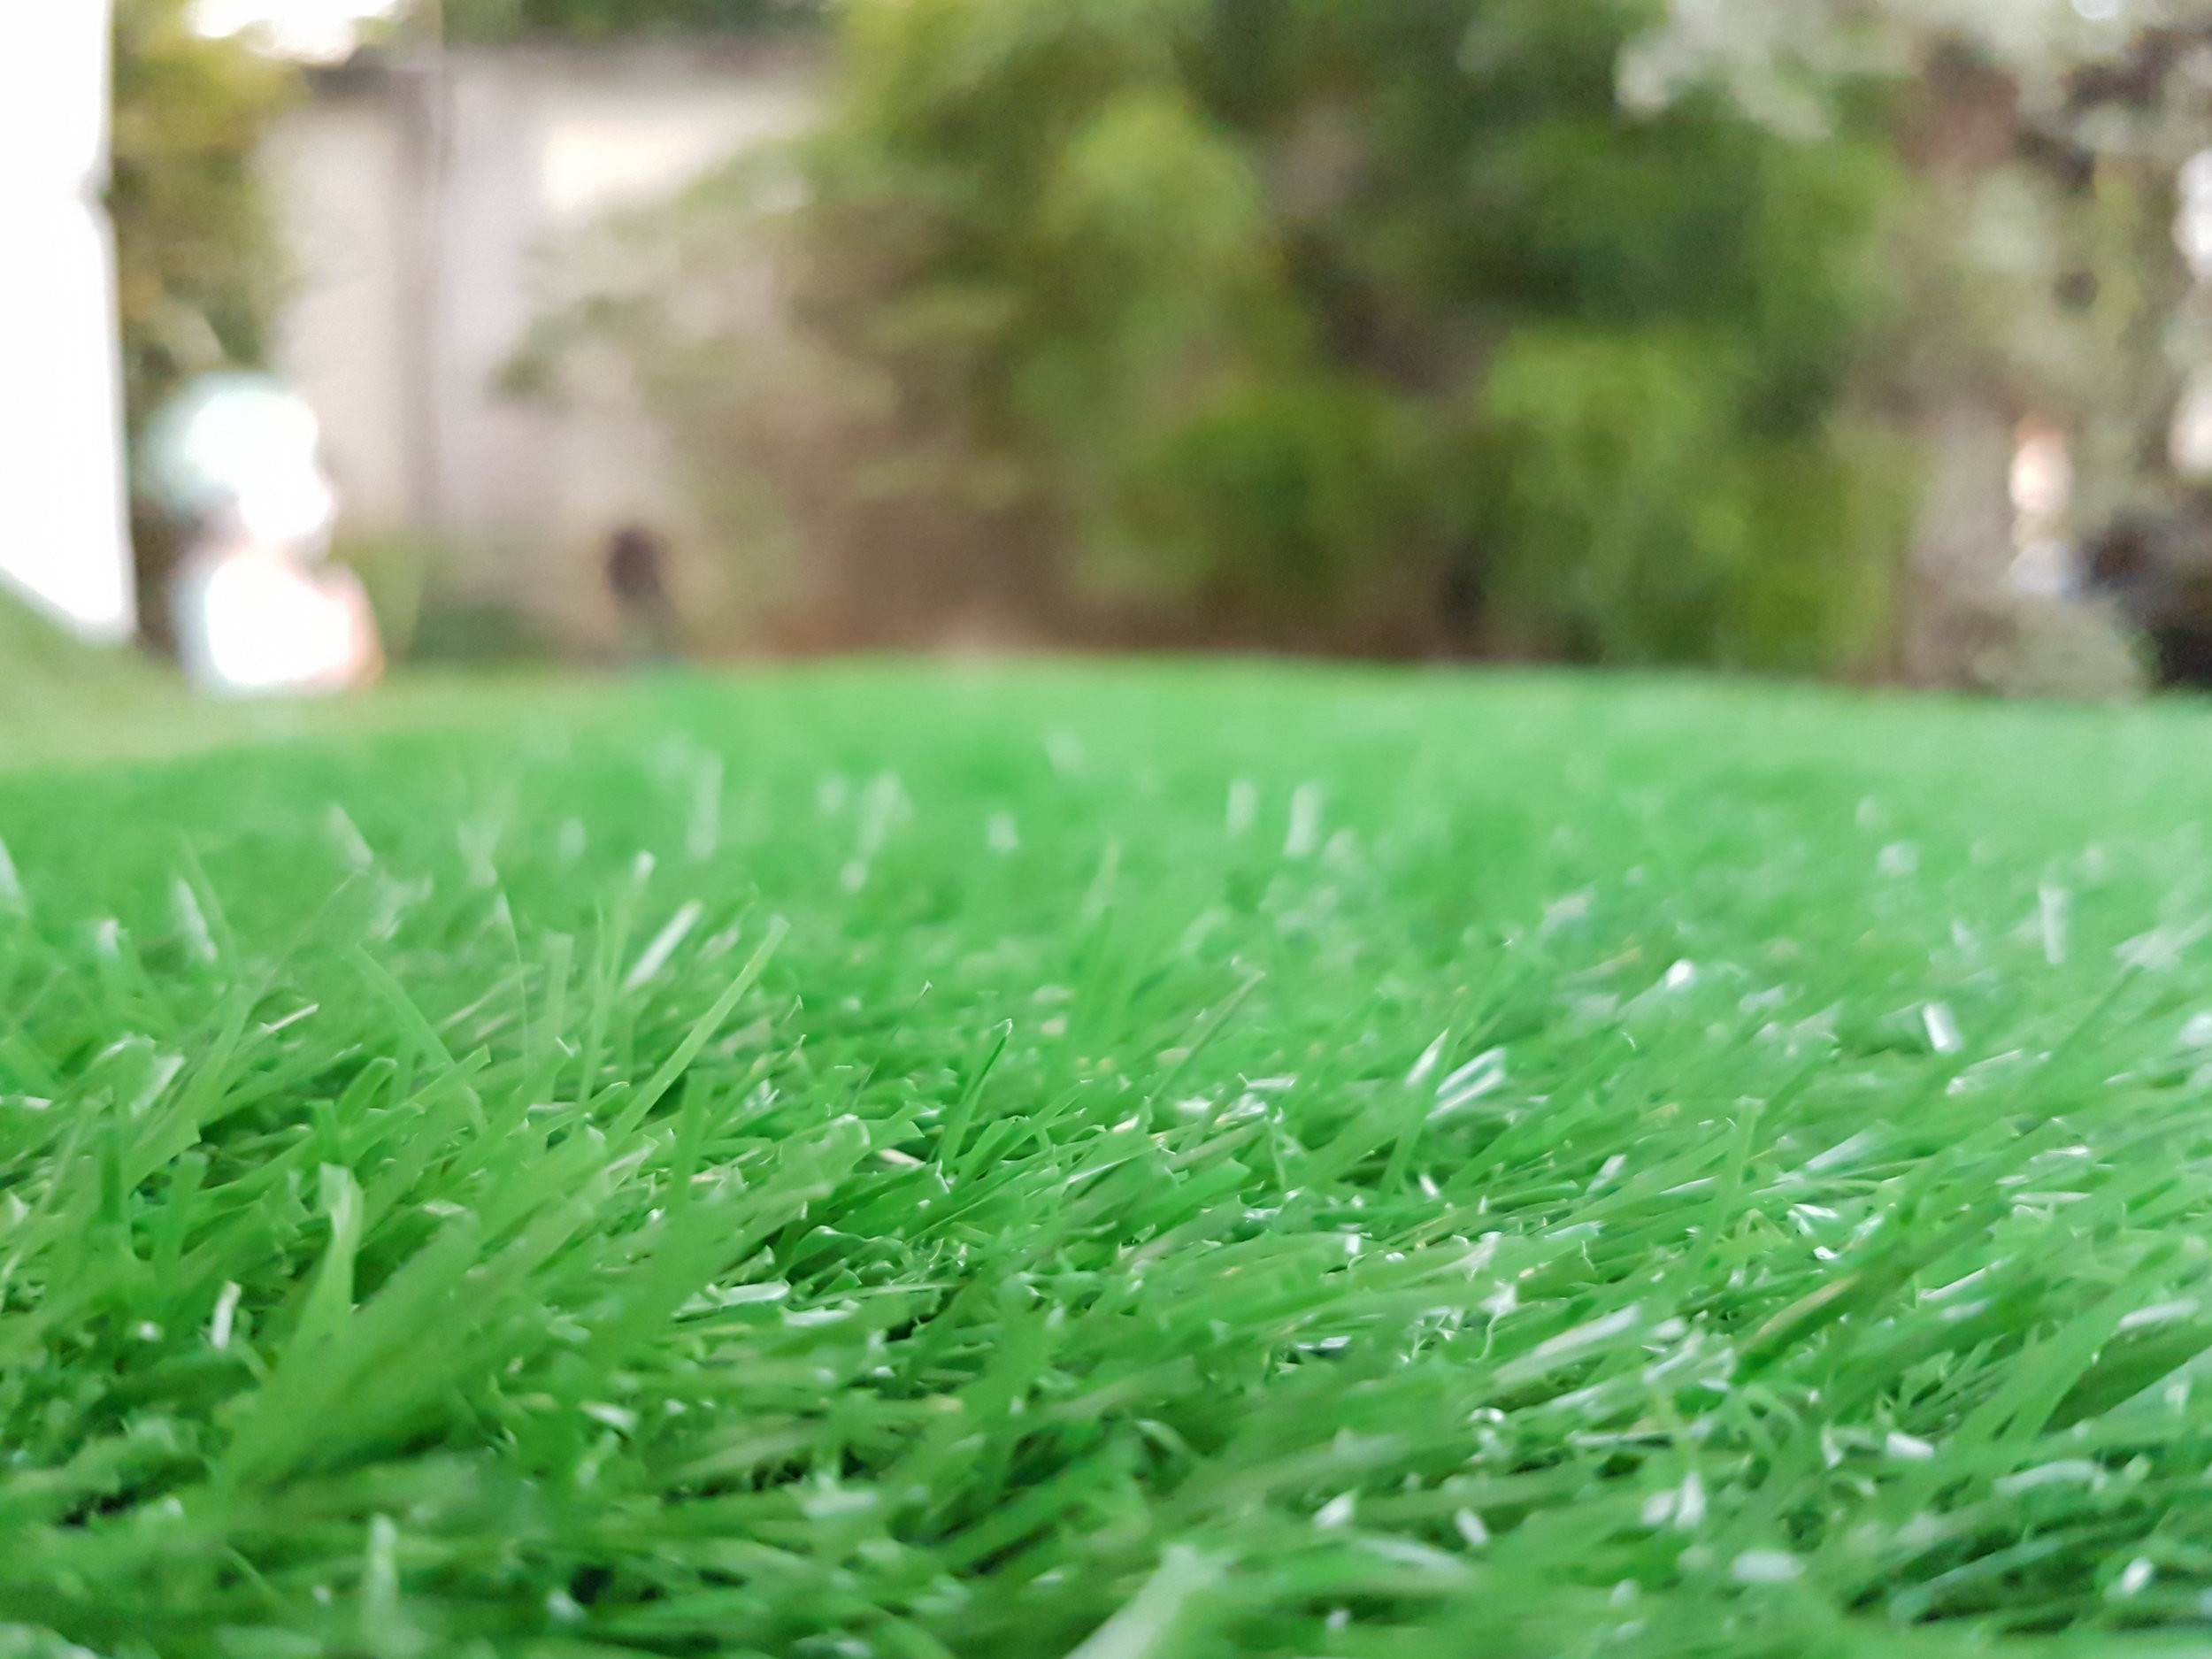 bigstock-The-Green-Artificial-Grass-Dec-214577113.jpg